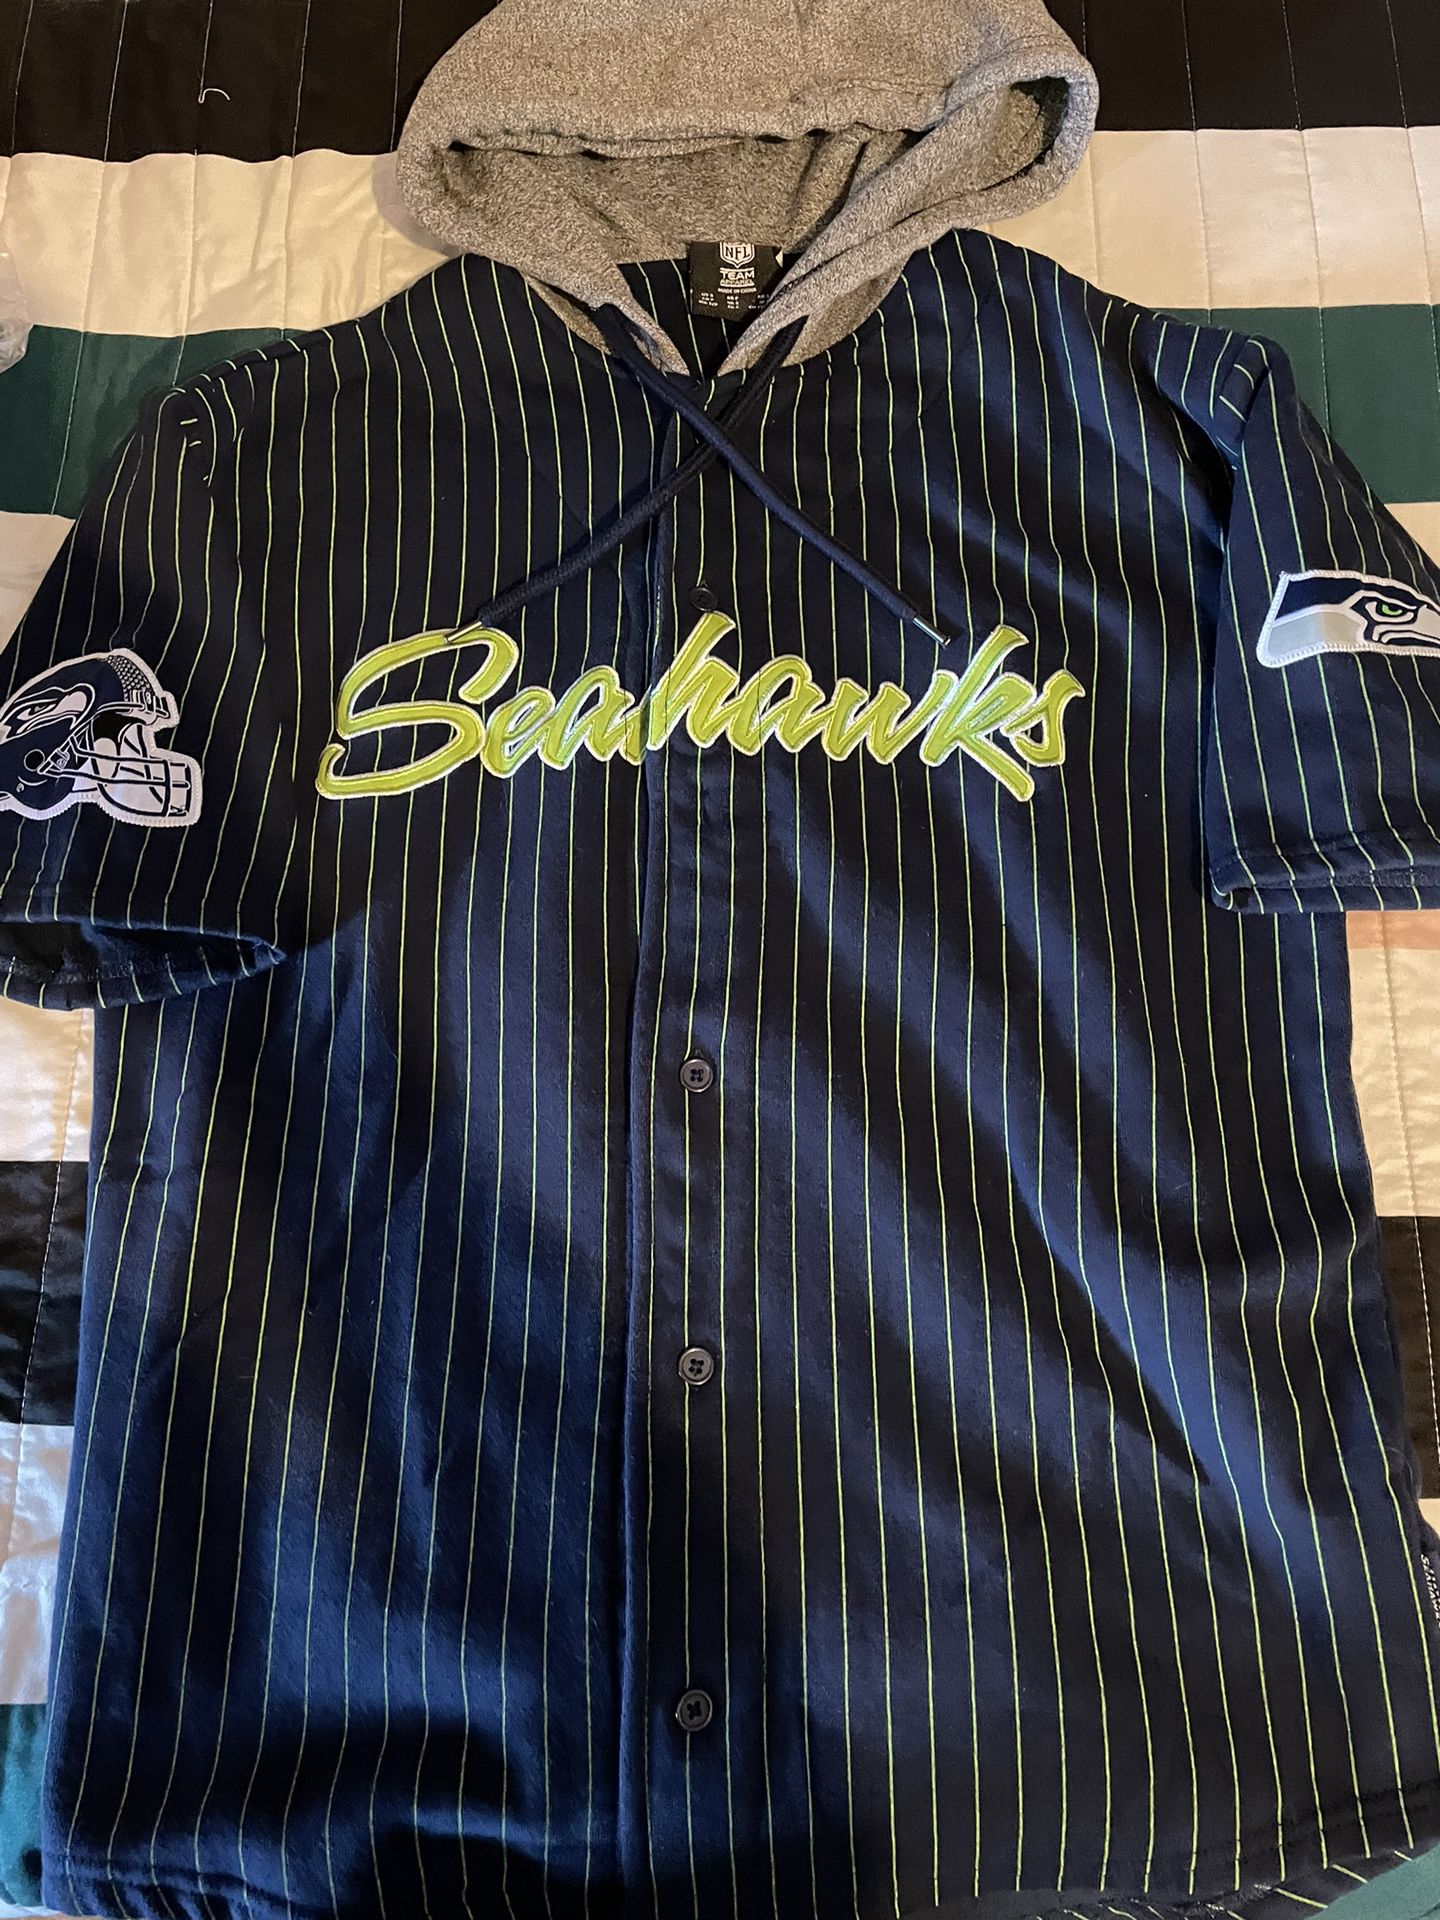 Seattle Seahawks Baseball Jersey 